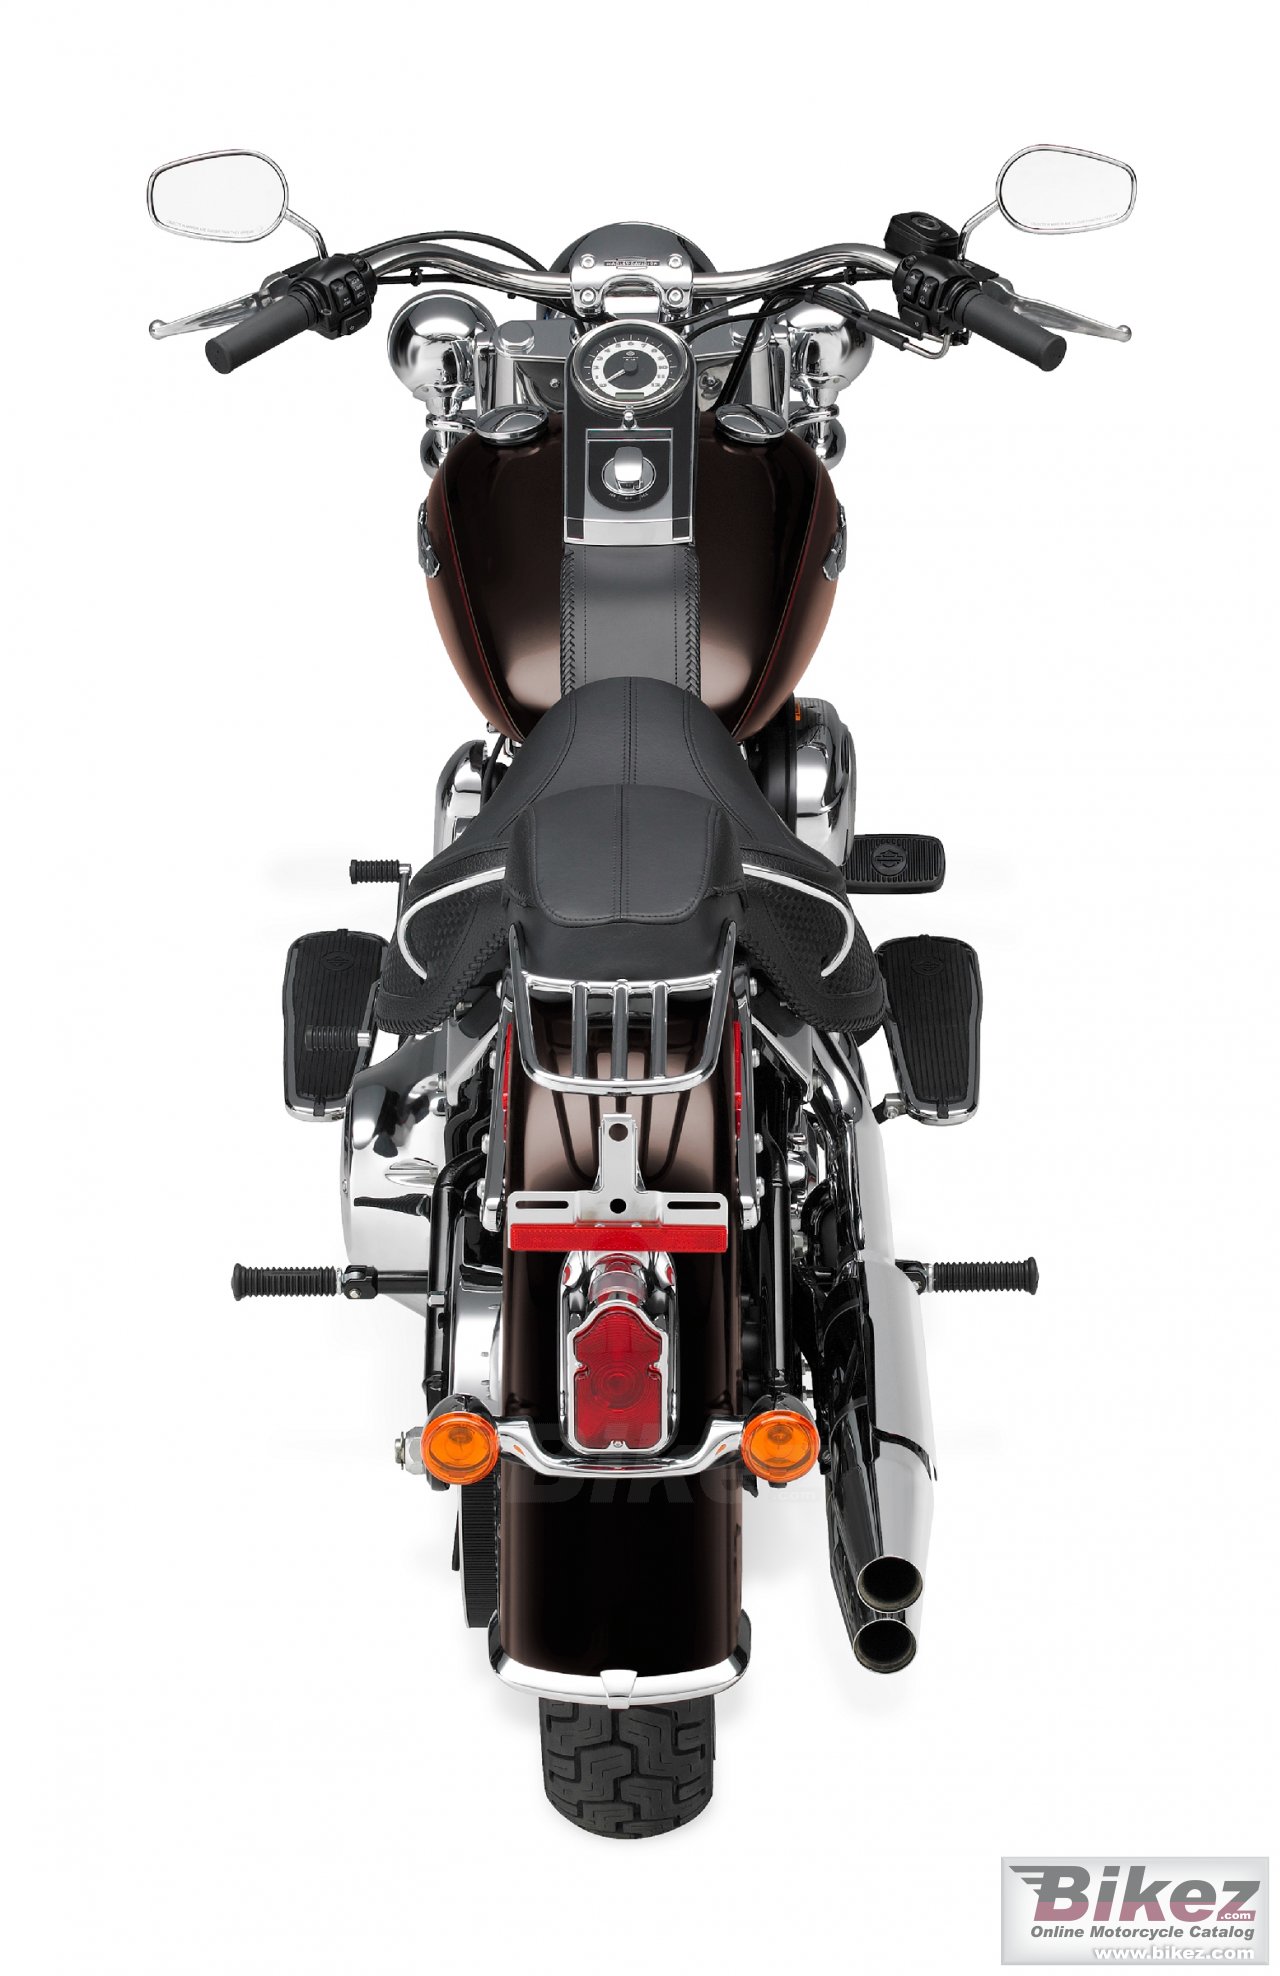 Harley-Davidson FLSTN Softail Deluxe